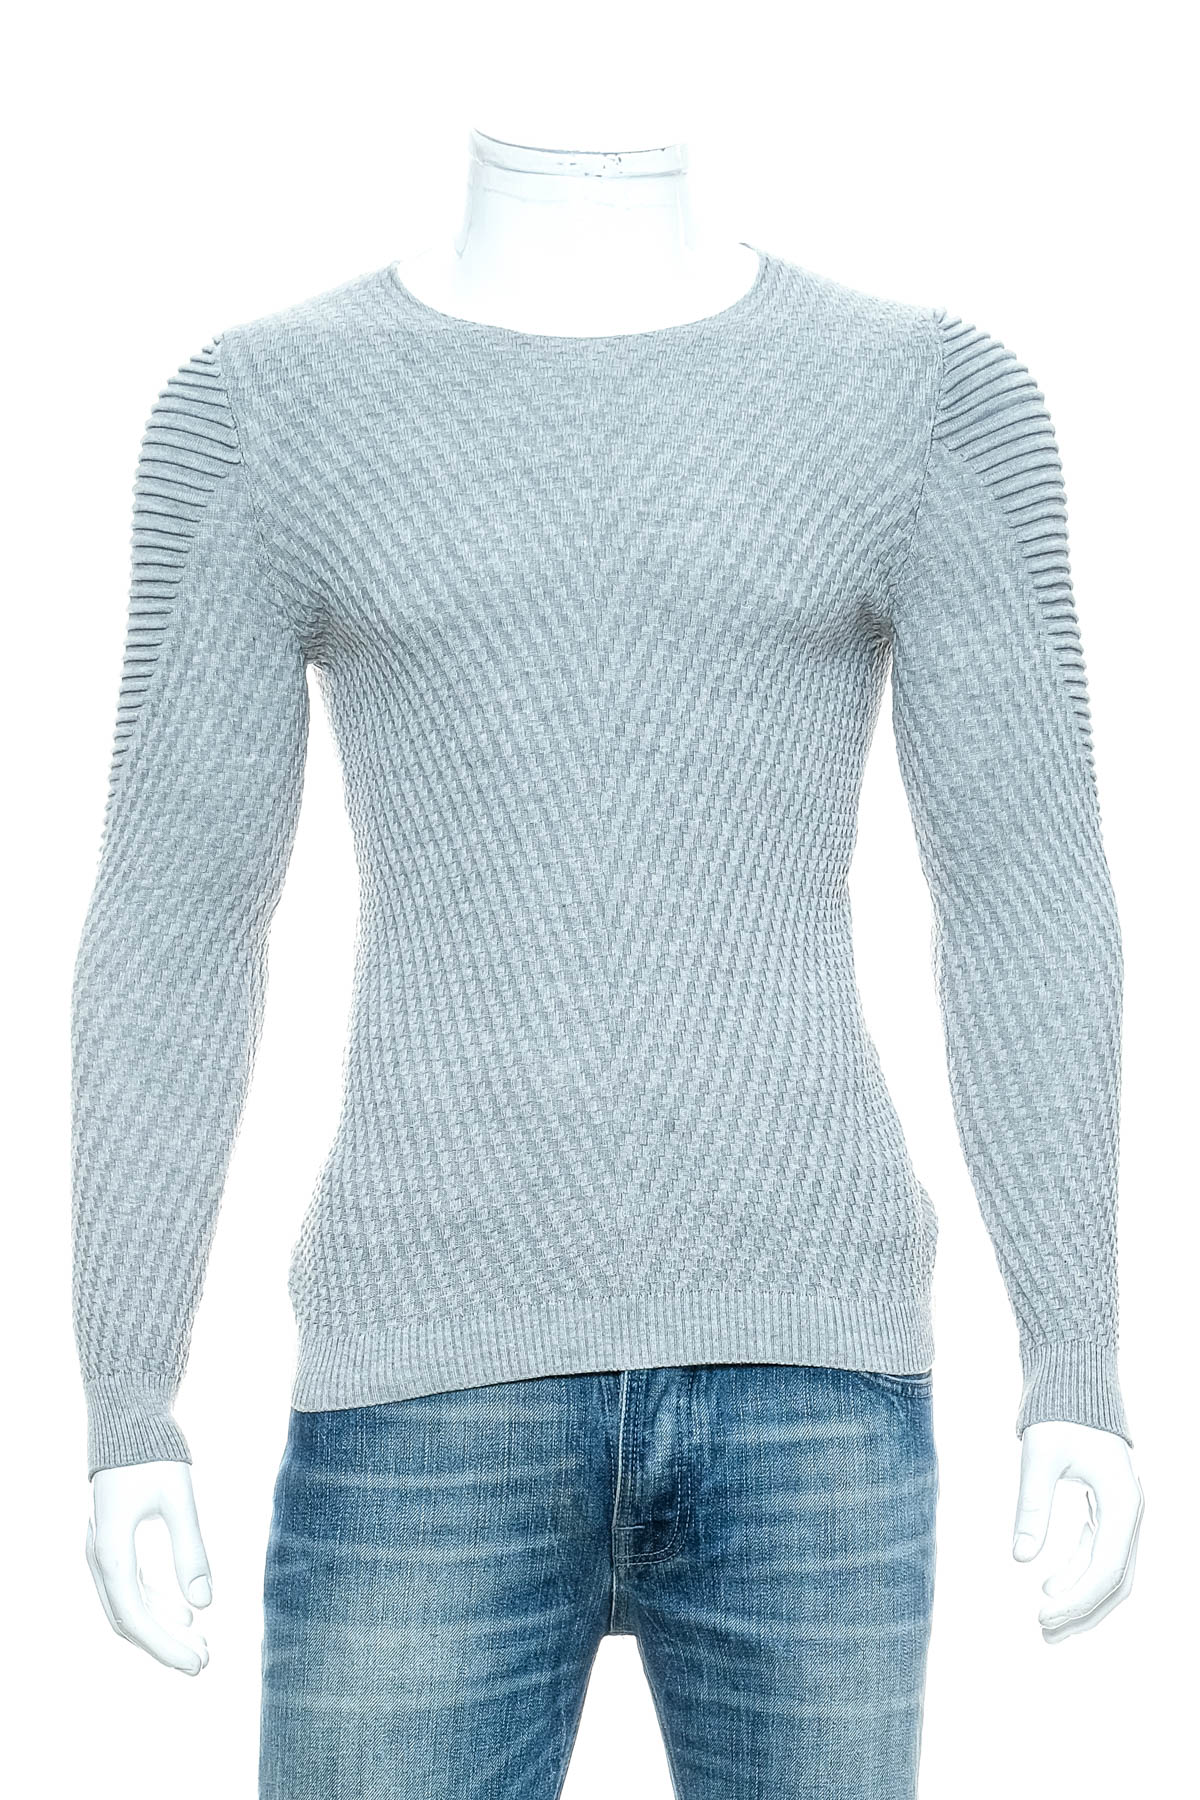 Men's sweater - Lagos - 0